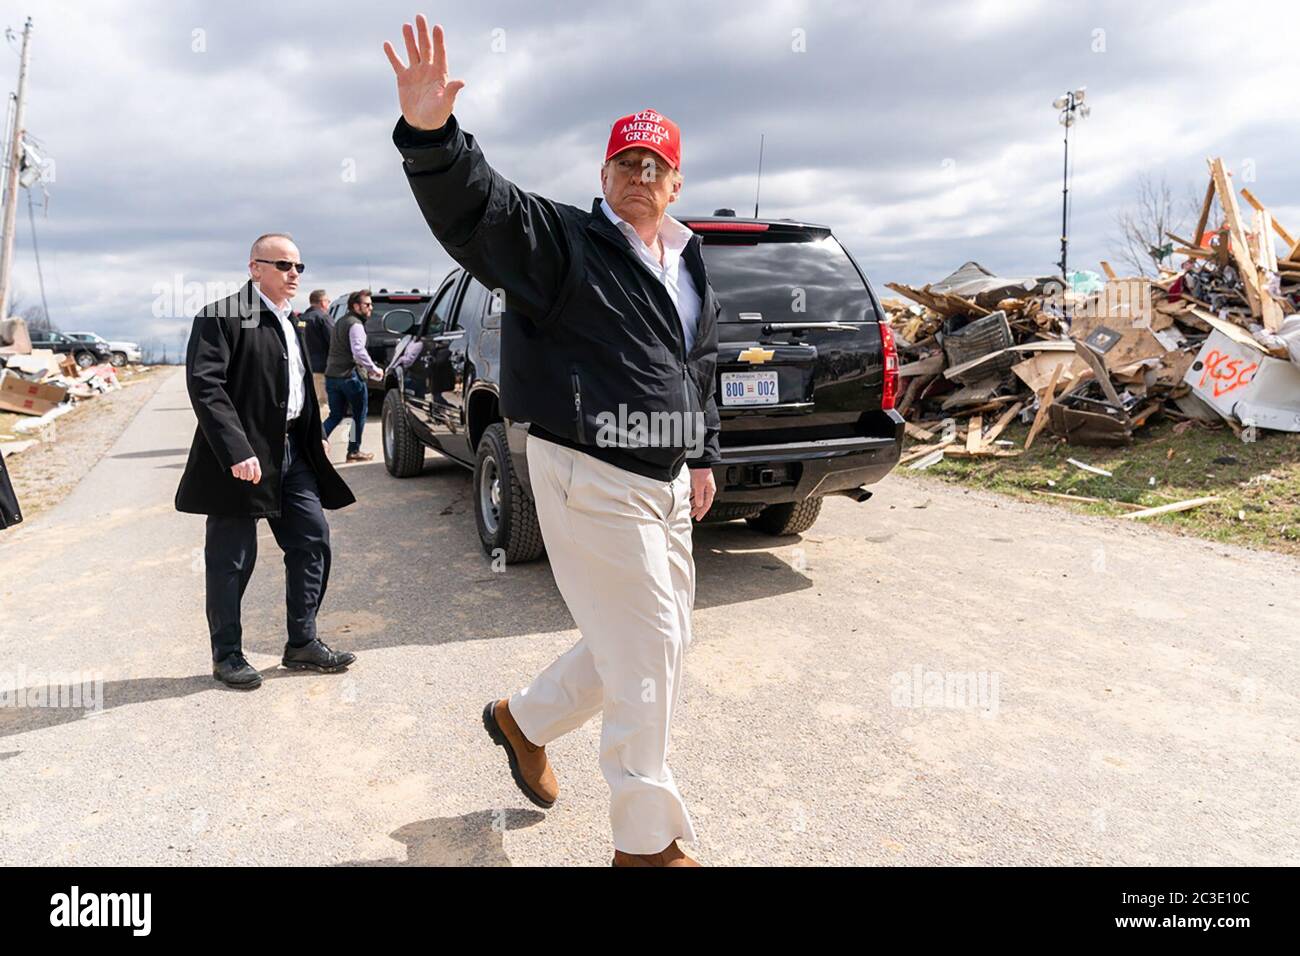 Le président Donald J. Trump fait ses adieux aux résidents alors qu'il quitte le quartier ravagé par la tornade près de Cookeville, Tennessee, le vendredi 6 mars 2020, où une tornade a frappé tôt le mardi 3 mars, tuant 18 des 24 personnes tuées dans le centre du Tennessee. Banque D'Images